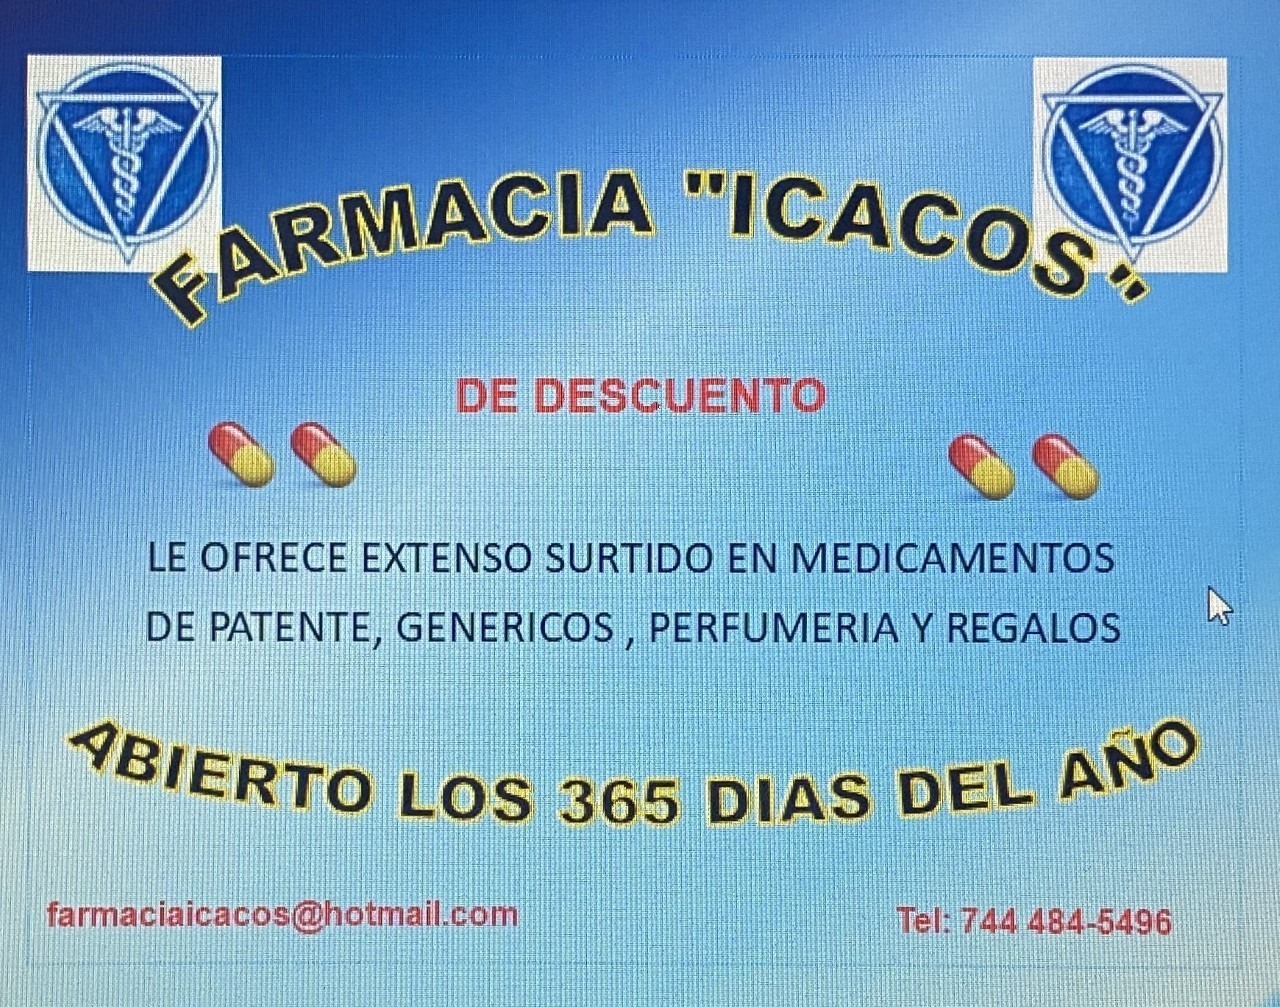 Farmacia Icacos_1